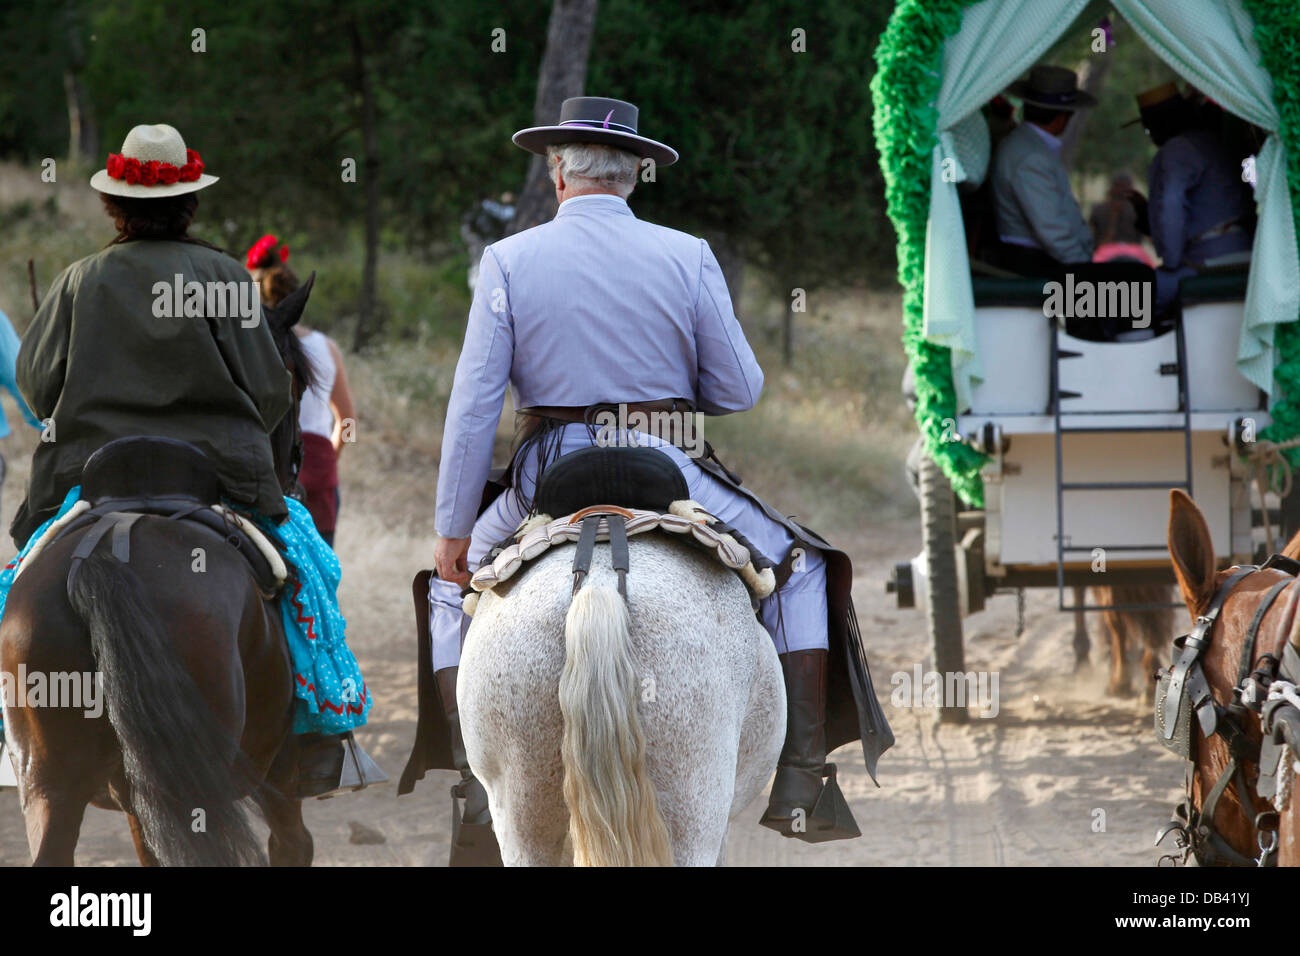 Reiter in Andalusien Spanien machen die jährliche katholischen Wallfahrt zum Heiligtum von El Rocio. Stockfoto